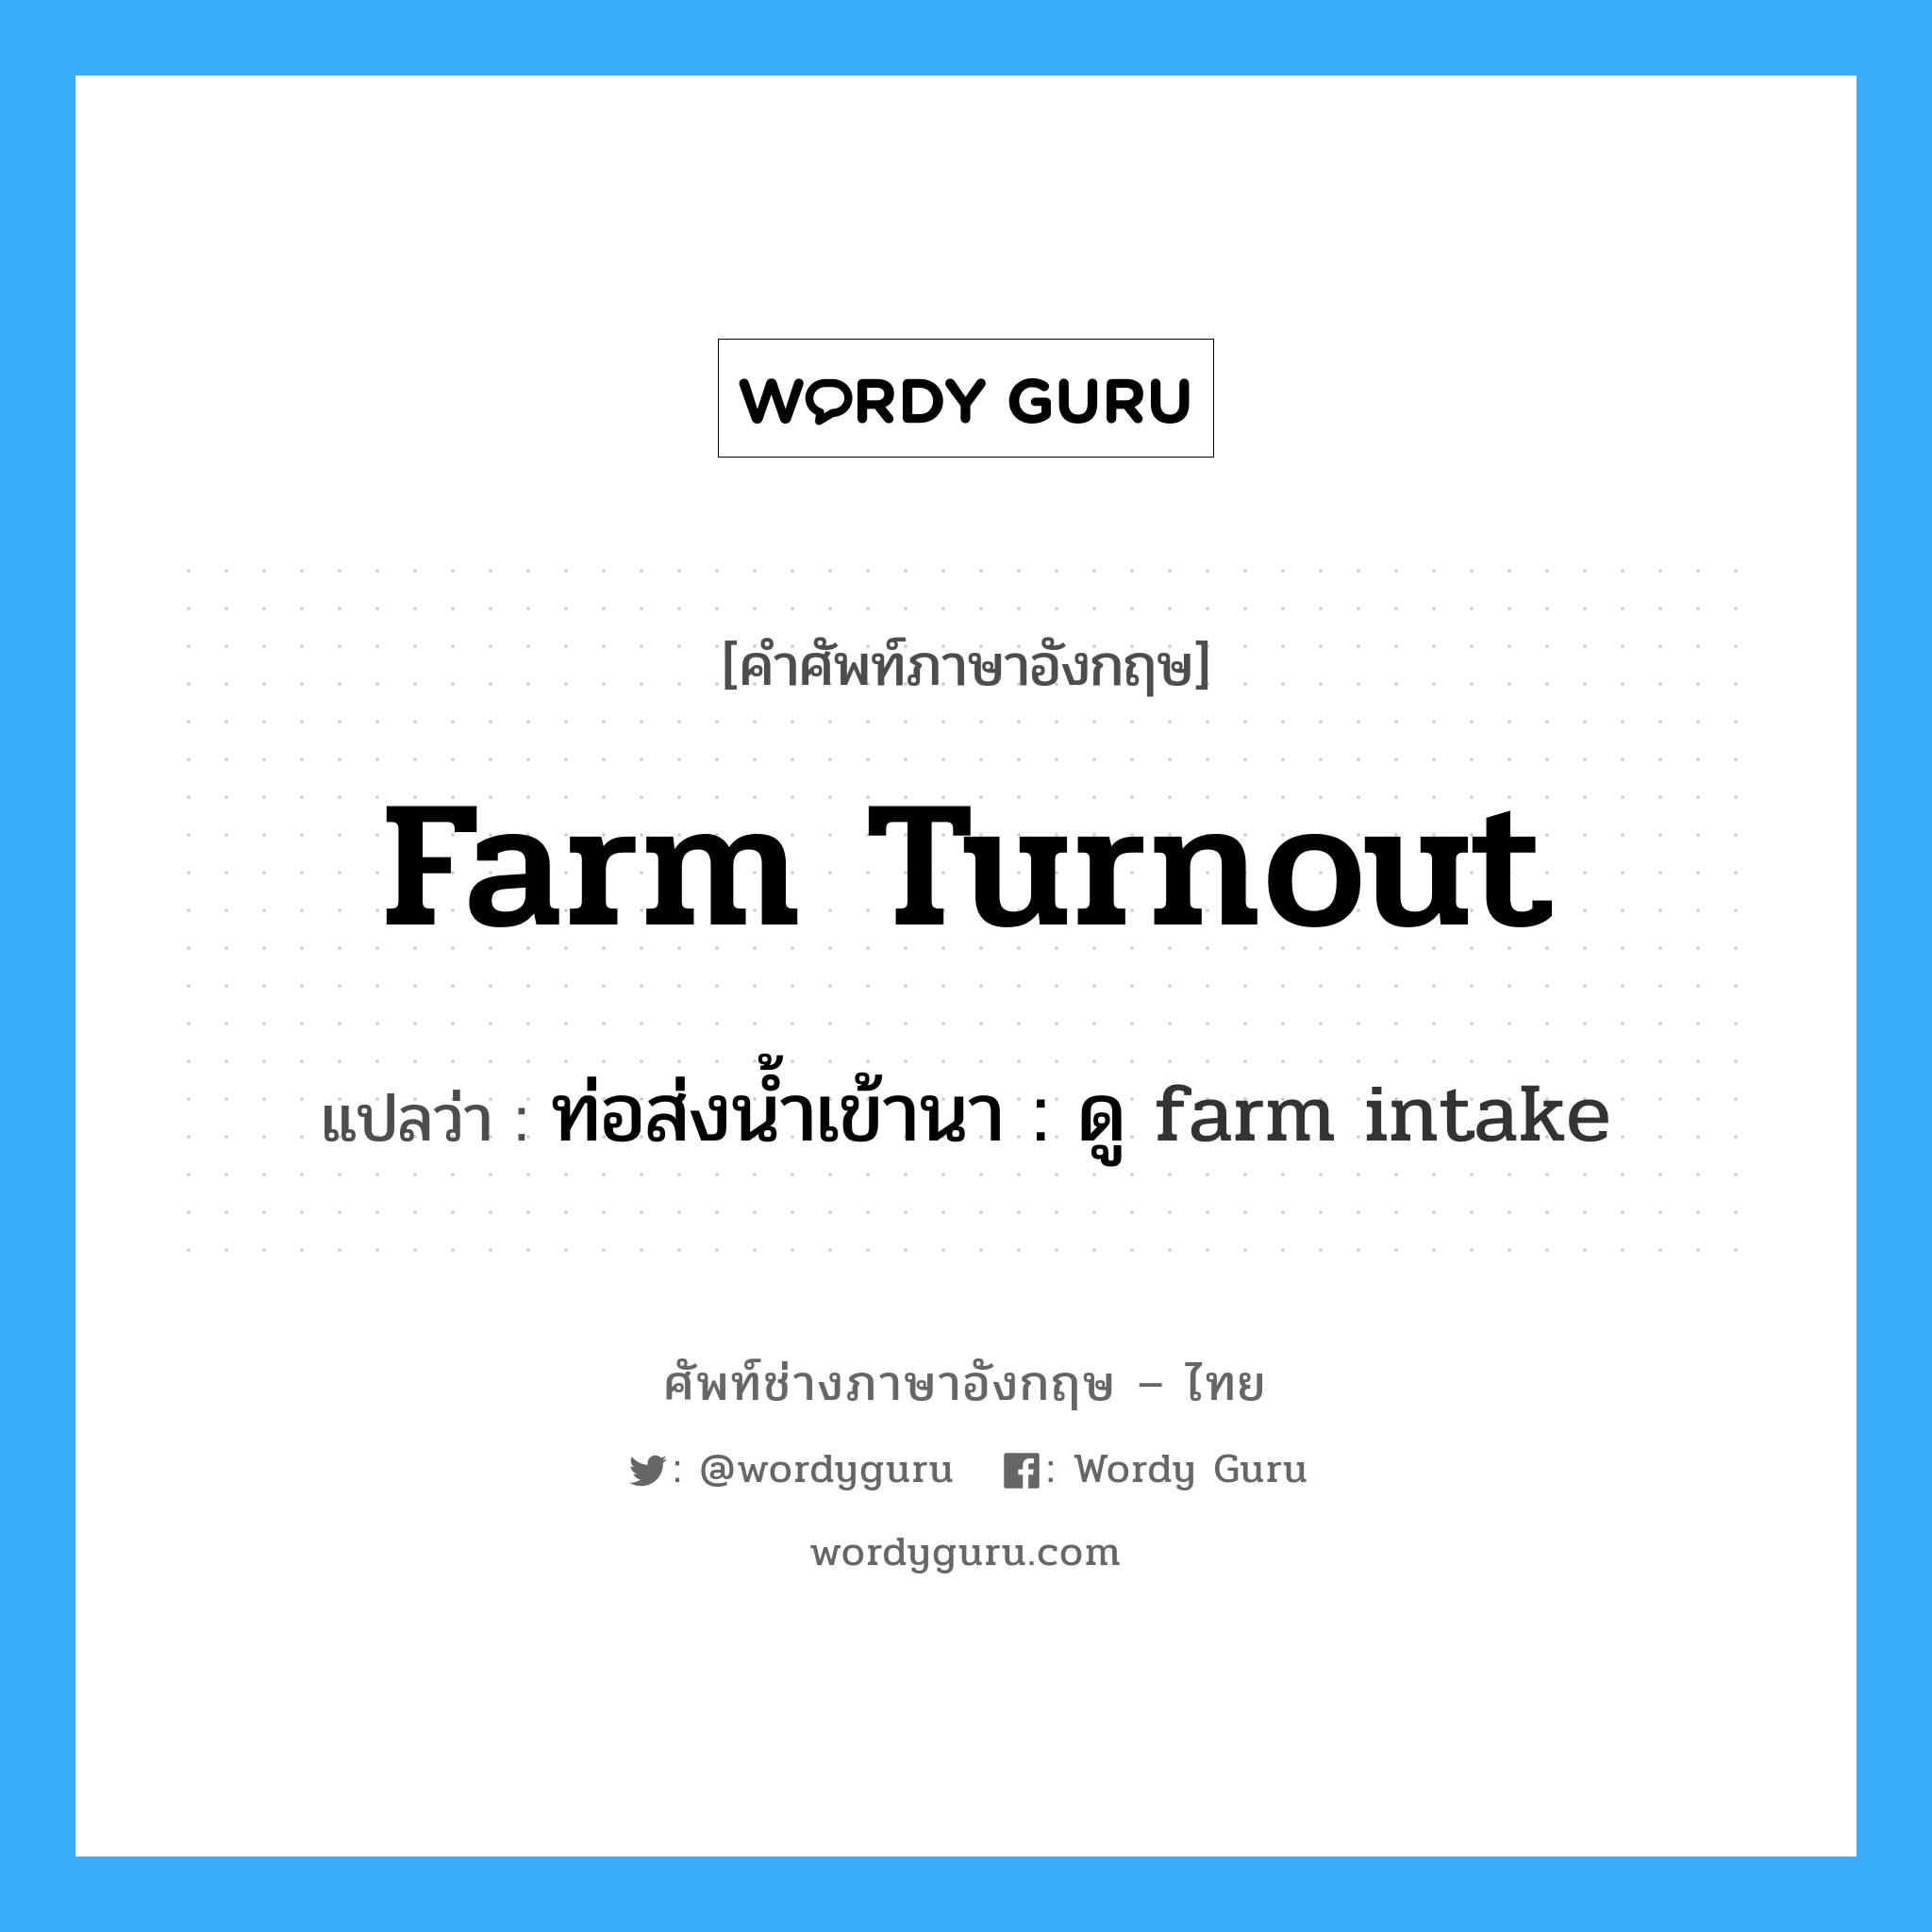 ท่อส่งน้ำเข้านา : ดู farm intake ภาษาอังกฤษ?, คำศัพท์ช่างภาษาอังกฤษ - ไทย ท่อส่งน้ำเข้านา : ดู farm intake คำศัพท์ภาษาอังกฤษ ท่อส่งน้ำเข้านา : ดู farm intake แปลว่า farm turnout